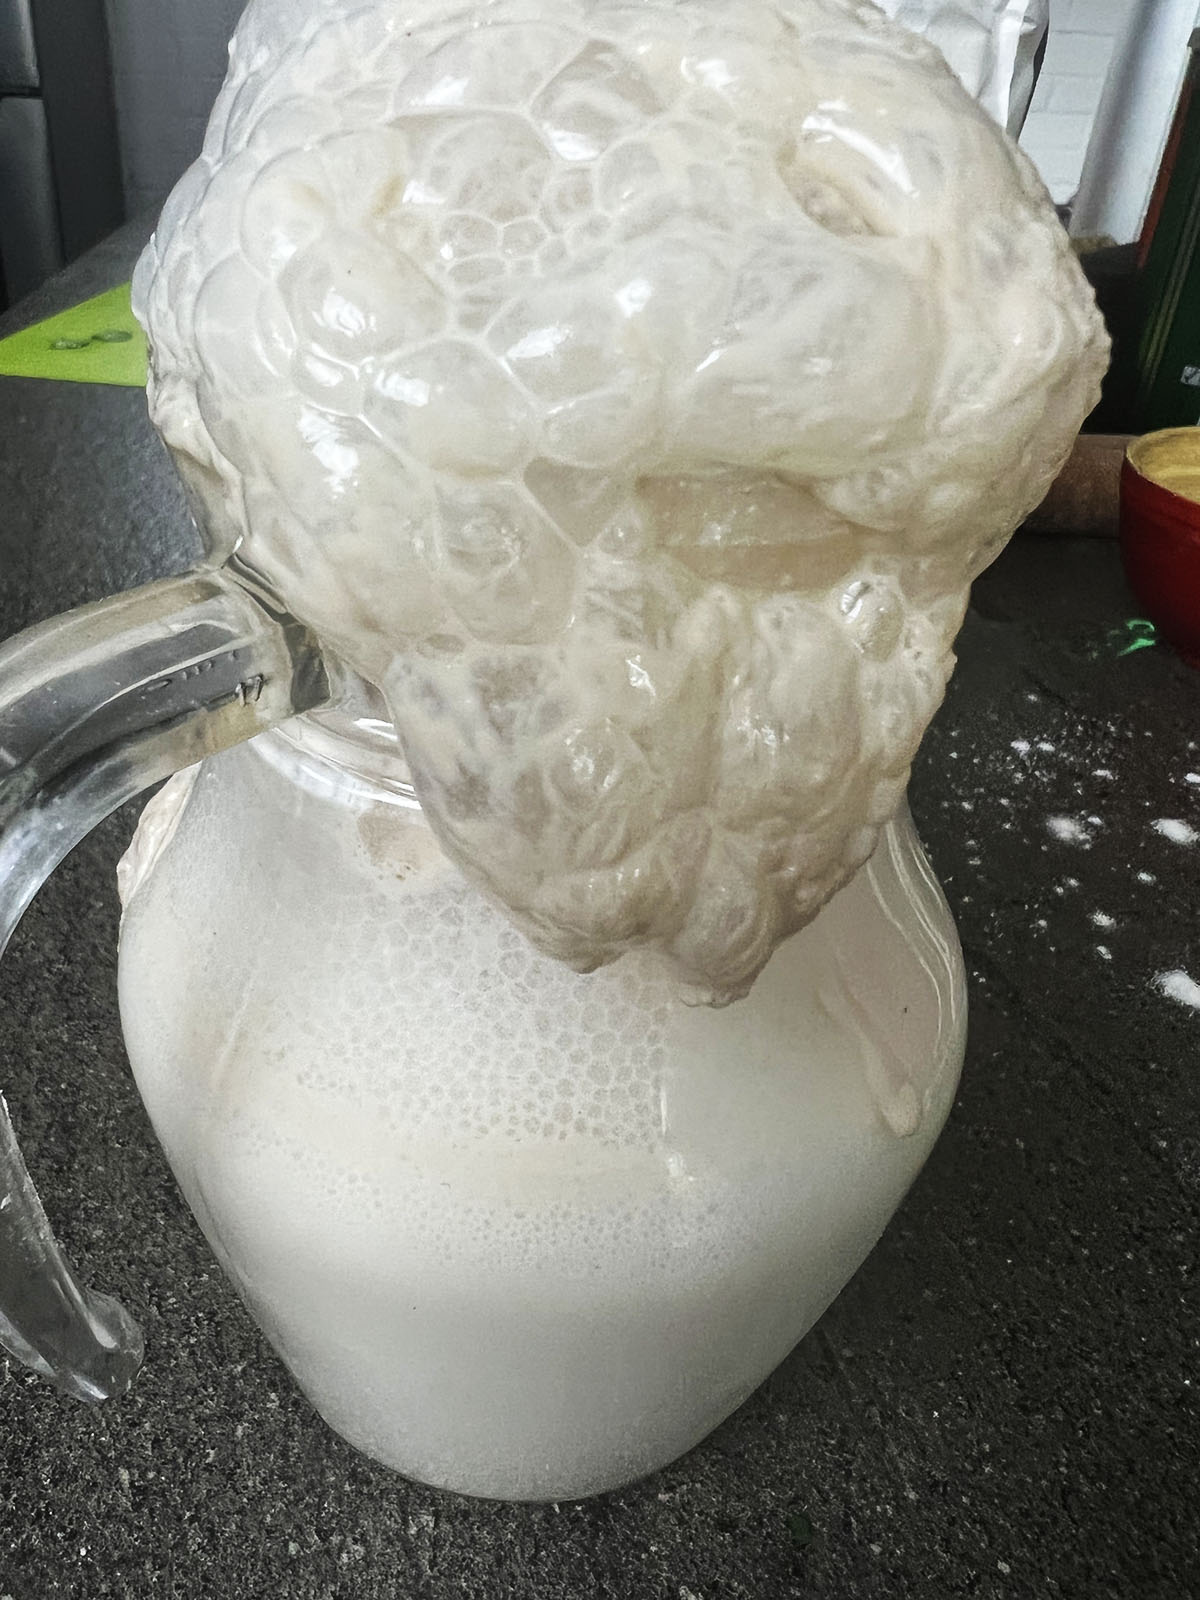 Frothy yeast in milk